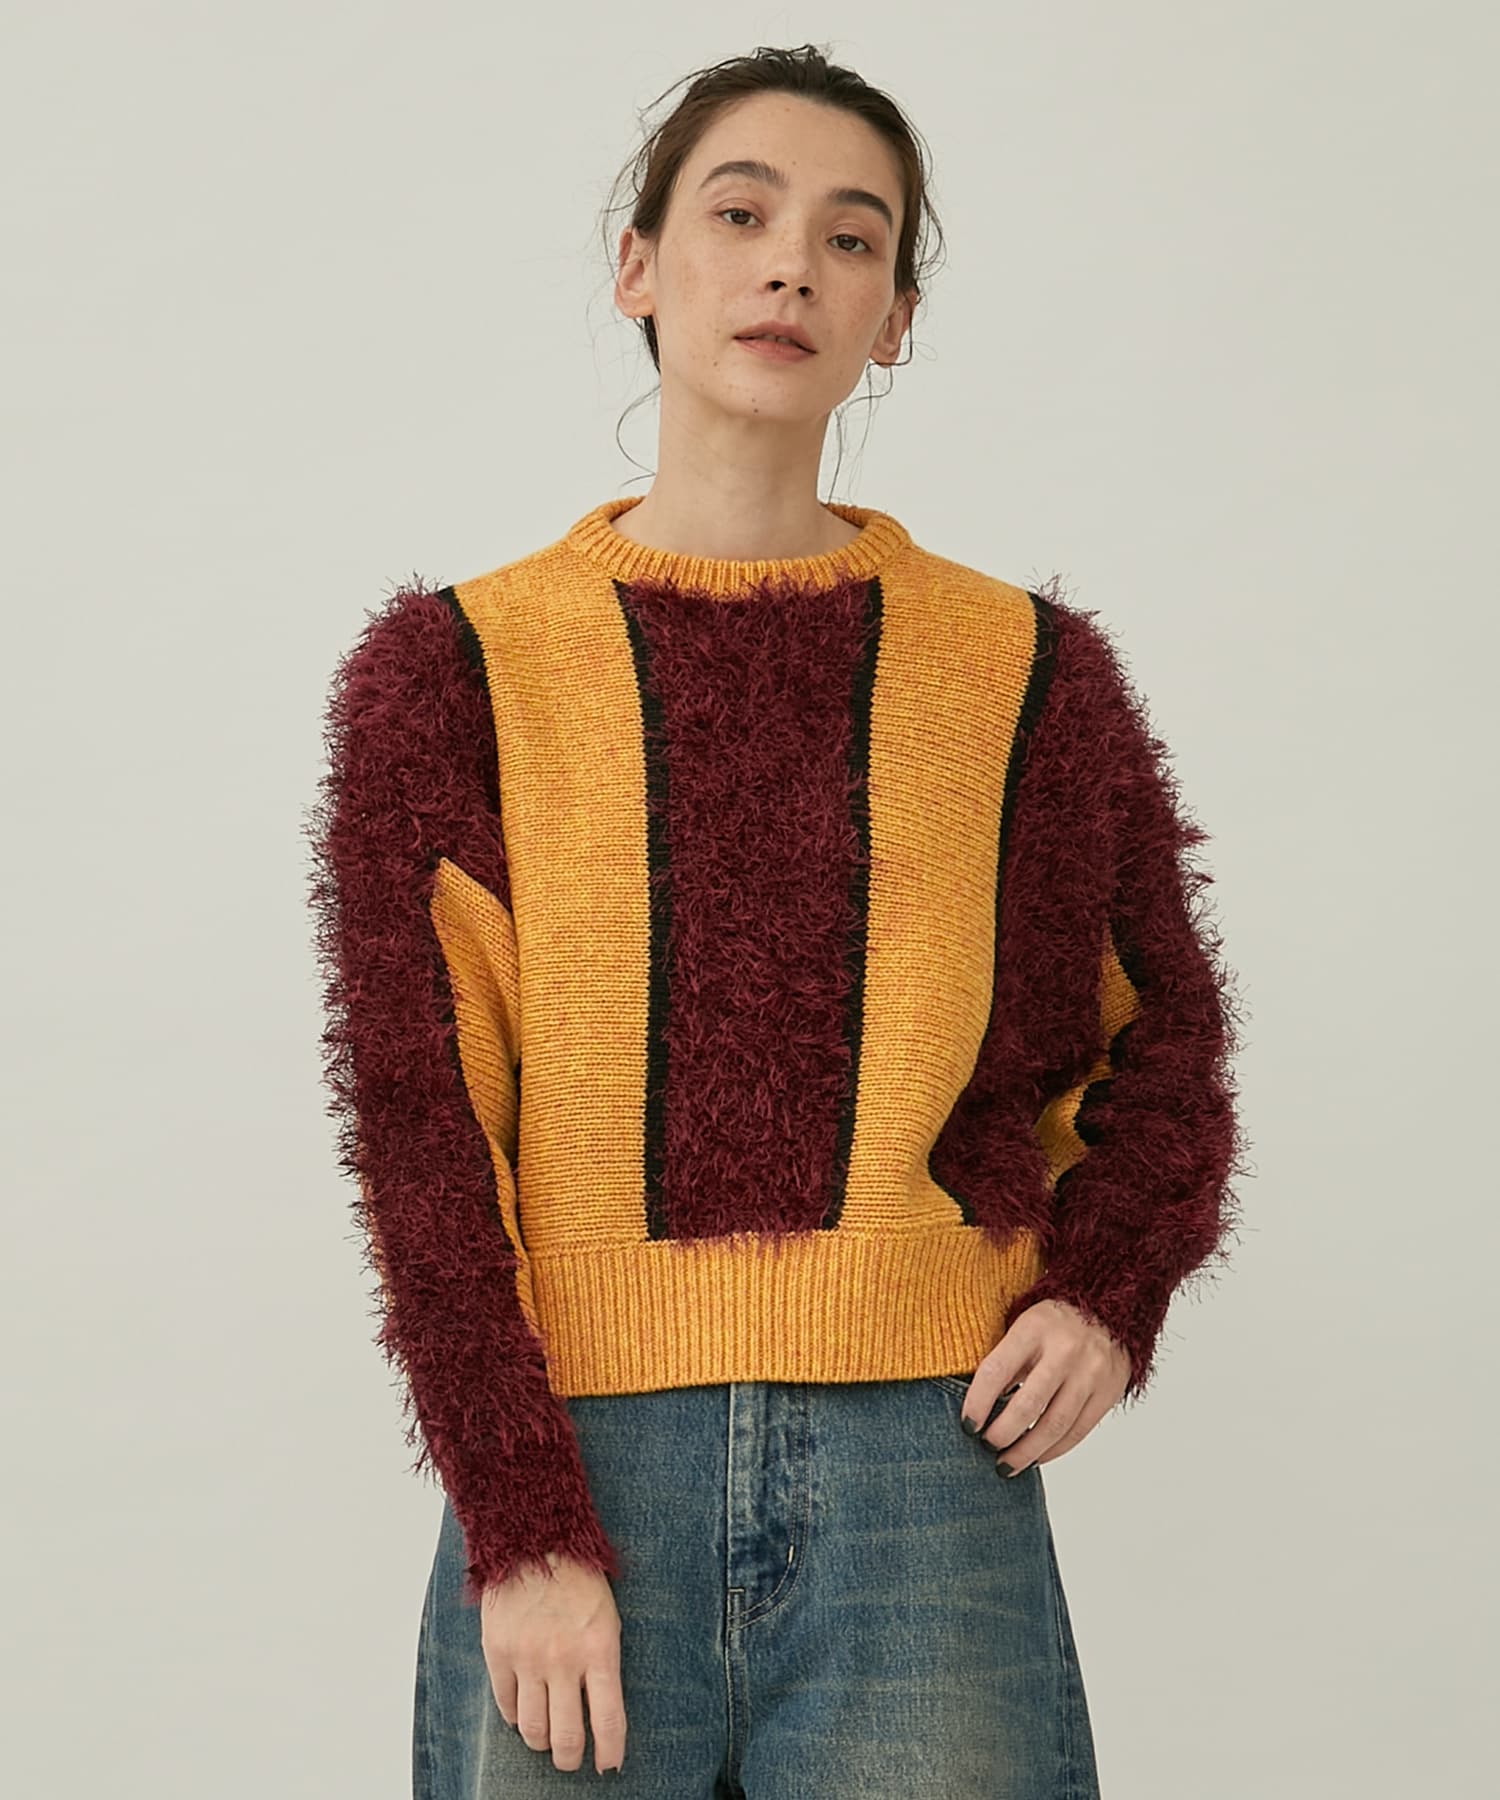 Mole knit pullover